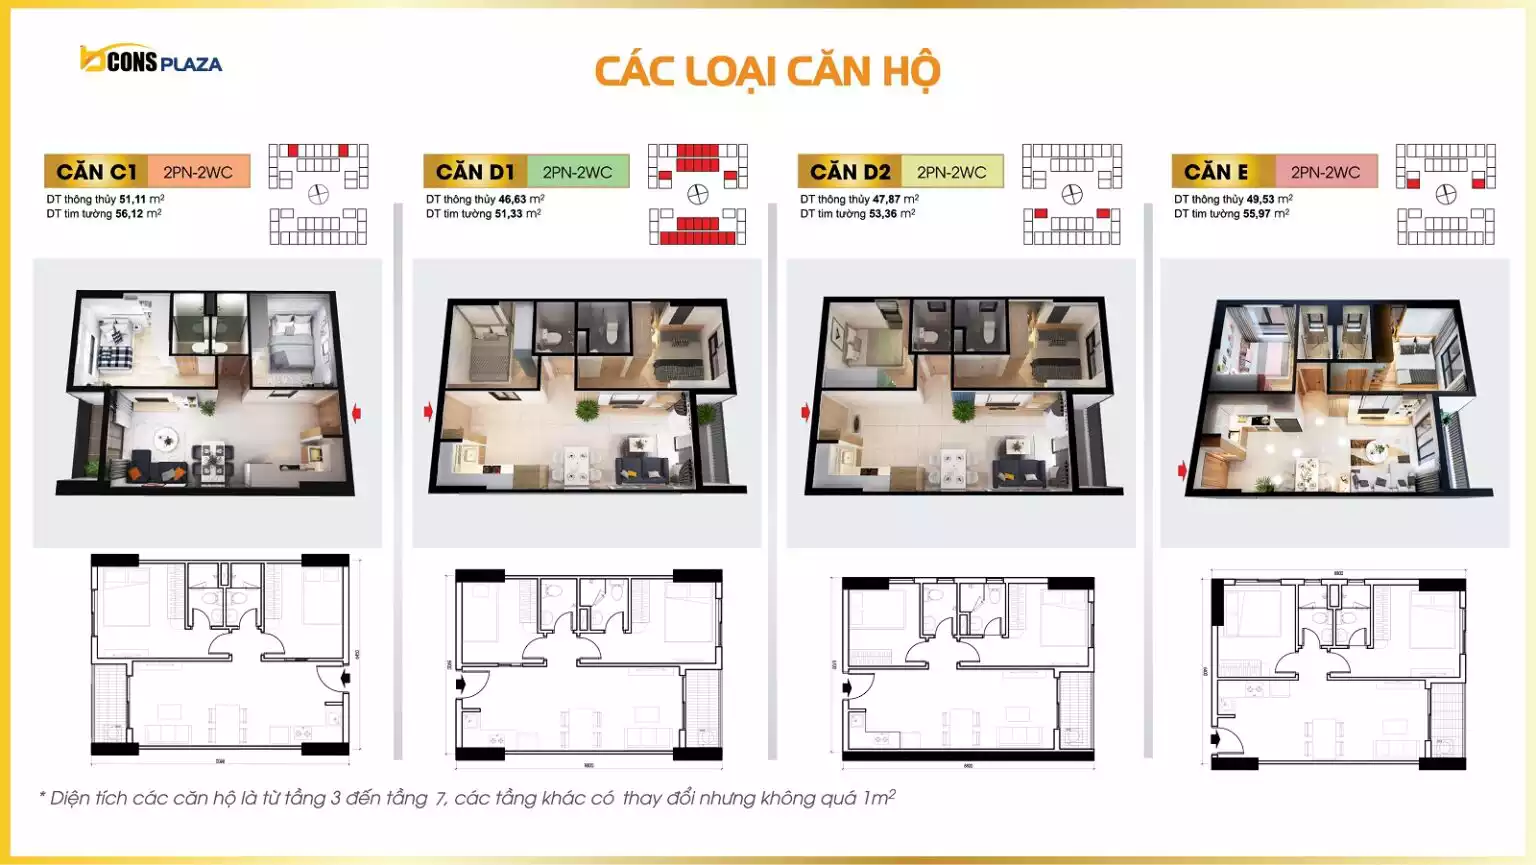 CAC-LOAI-CAN-HO-1-1536x865-new